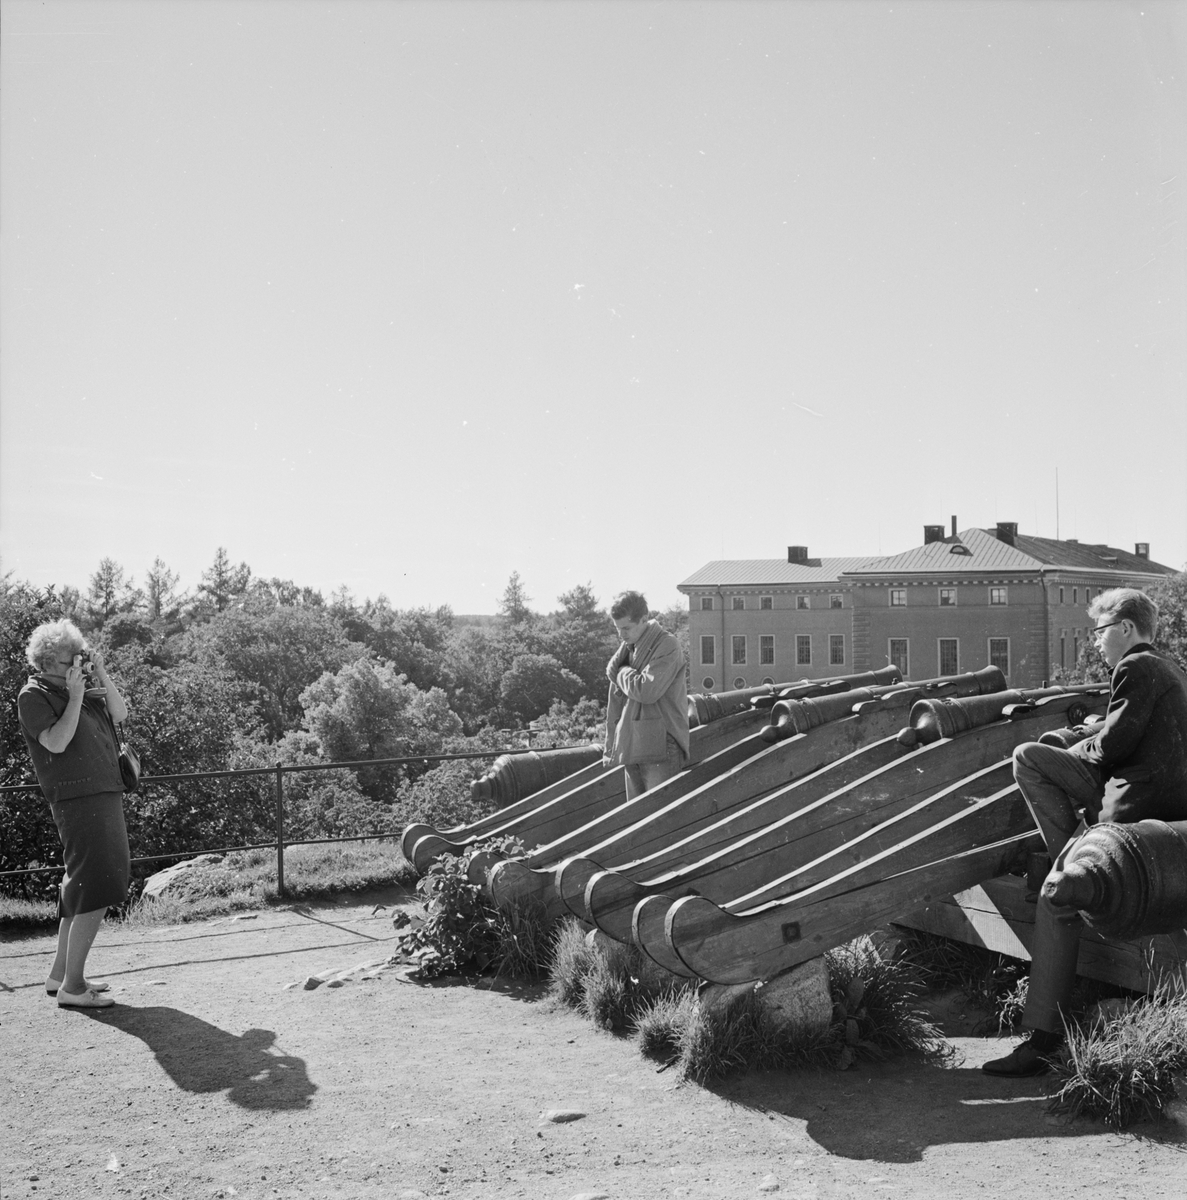 "Turistinvasion", Slottsbacken, Uppsala 1963